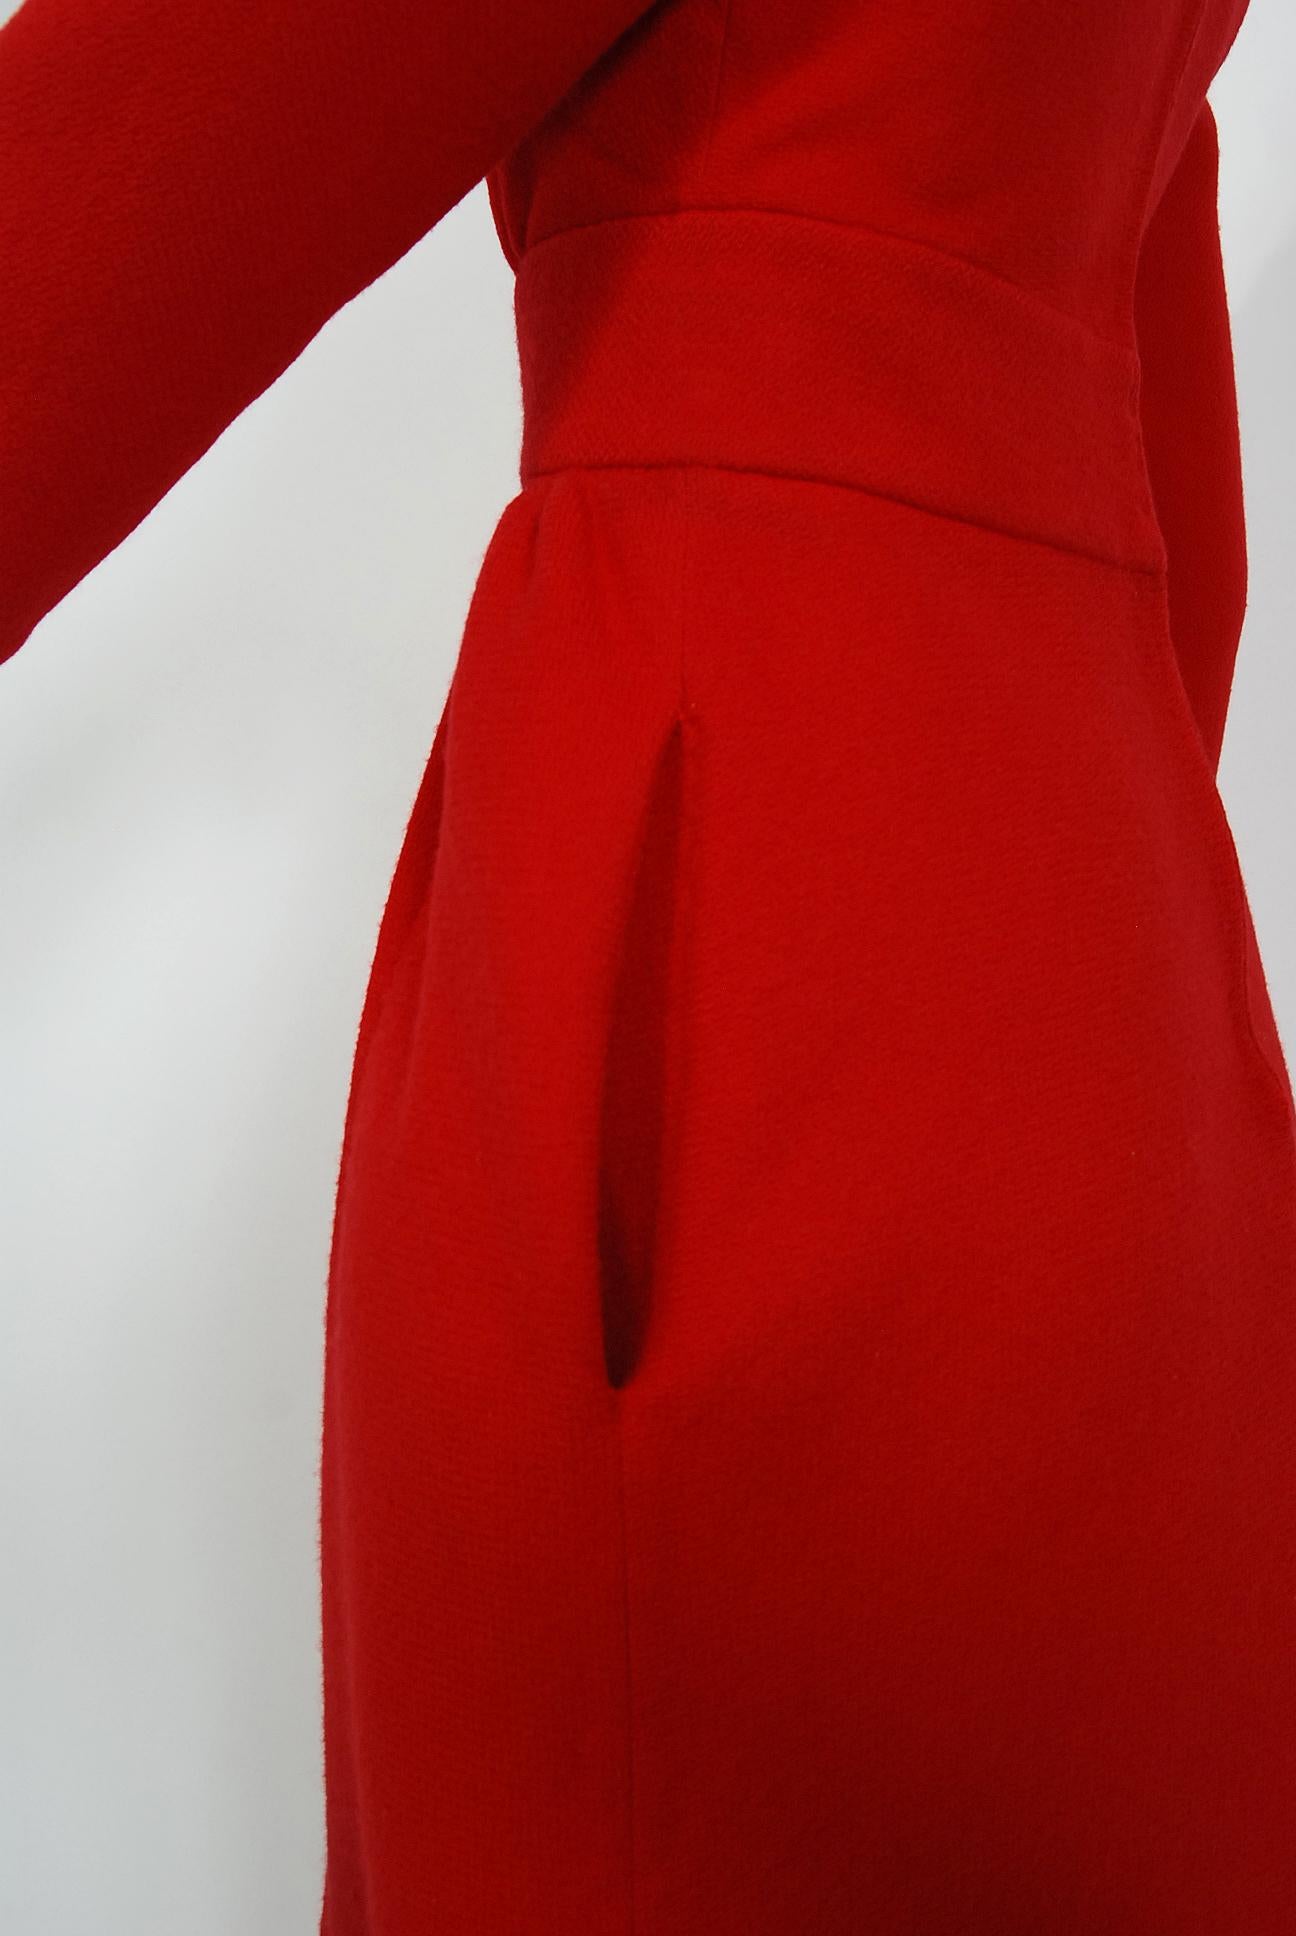 Rouge Nina Ricci - Combinaison vintage haute couture en laine rouge rubis, style mod, répertoriée, 1967 en vente